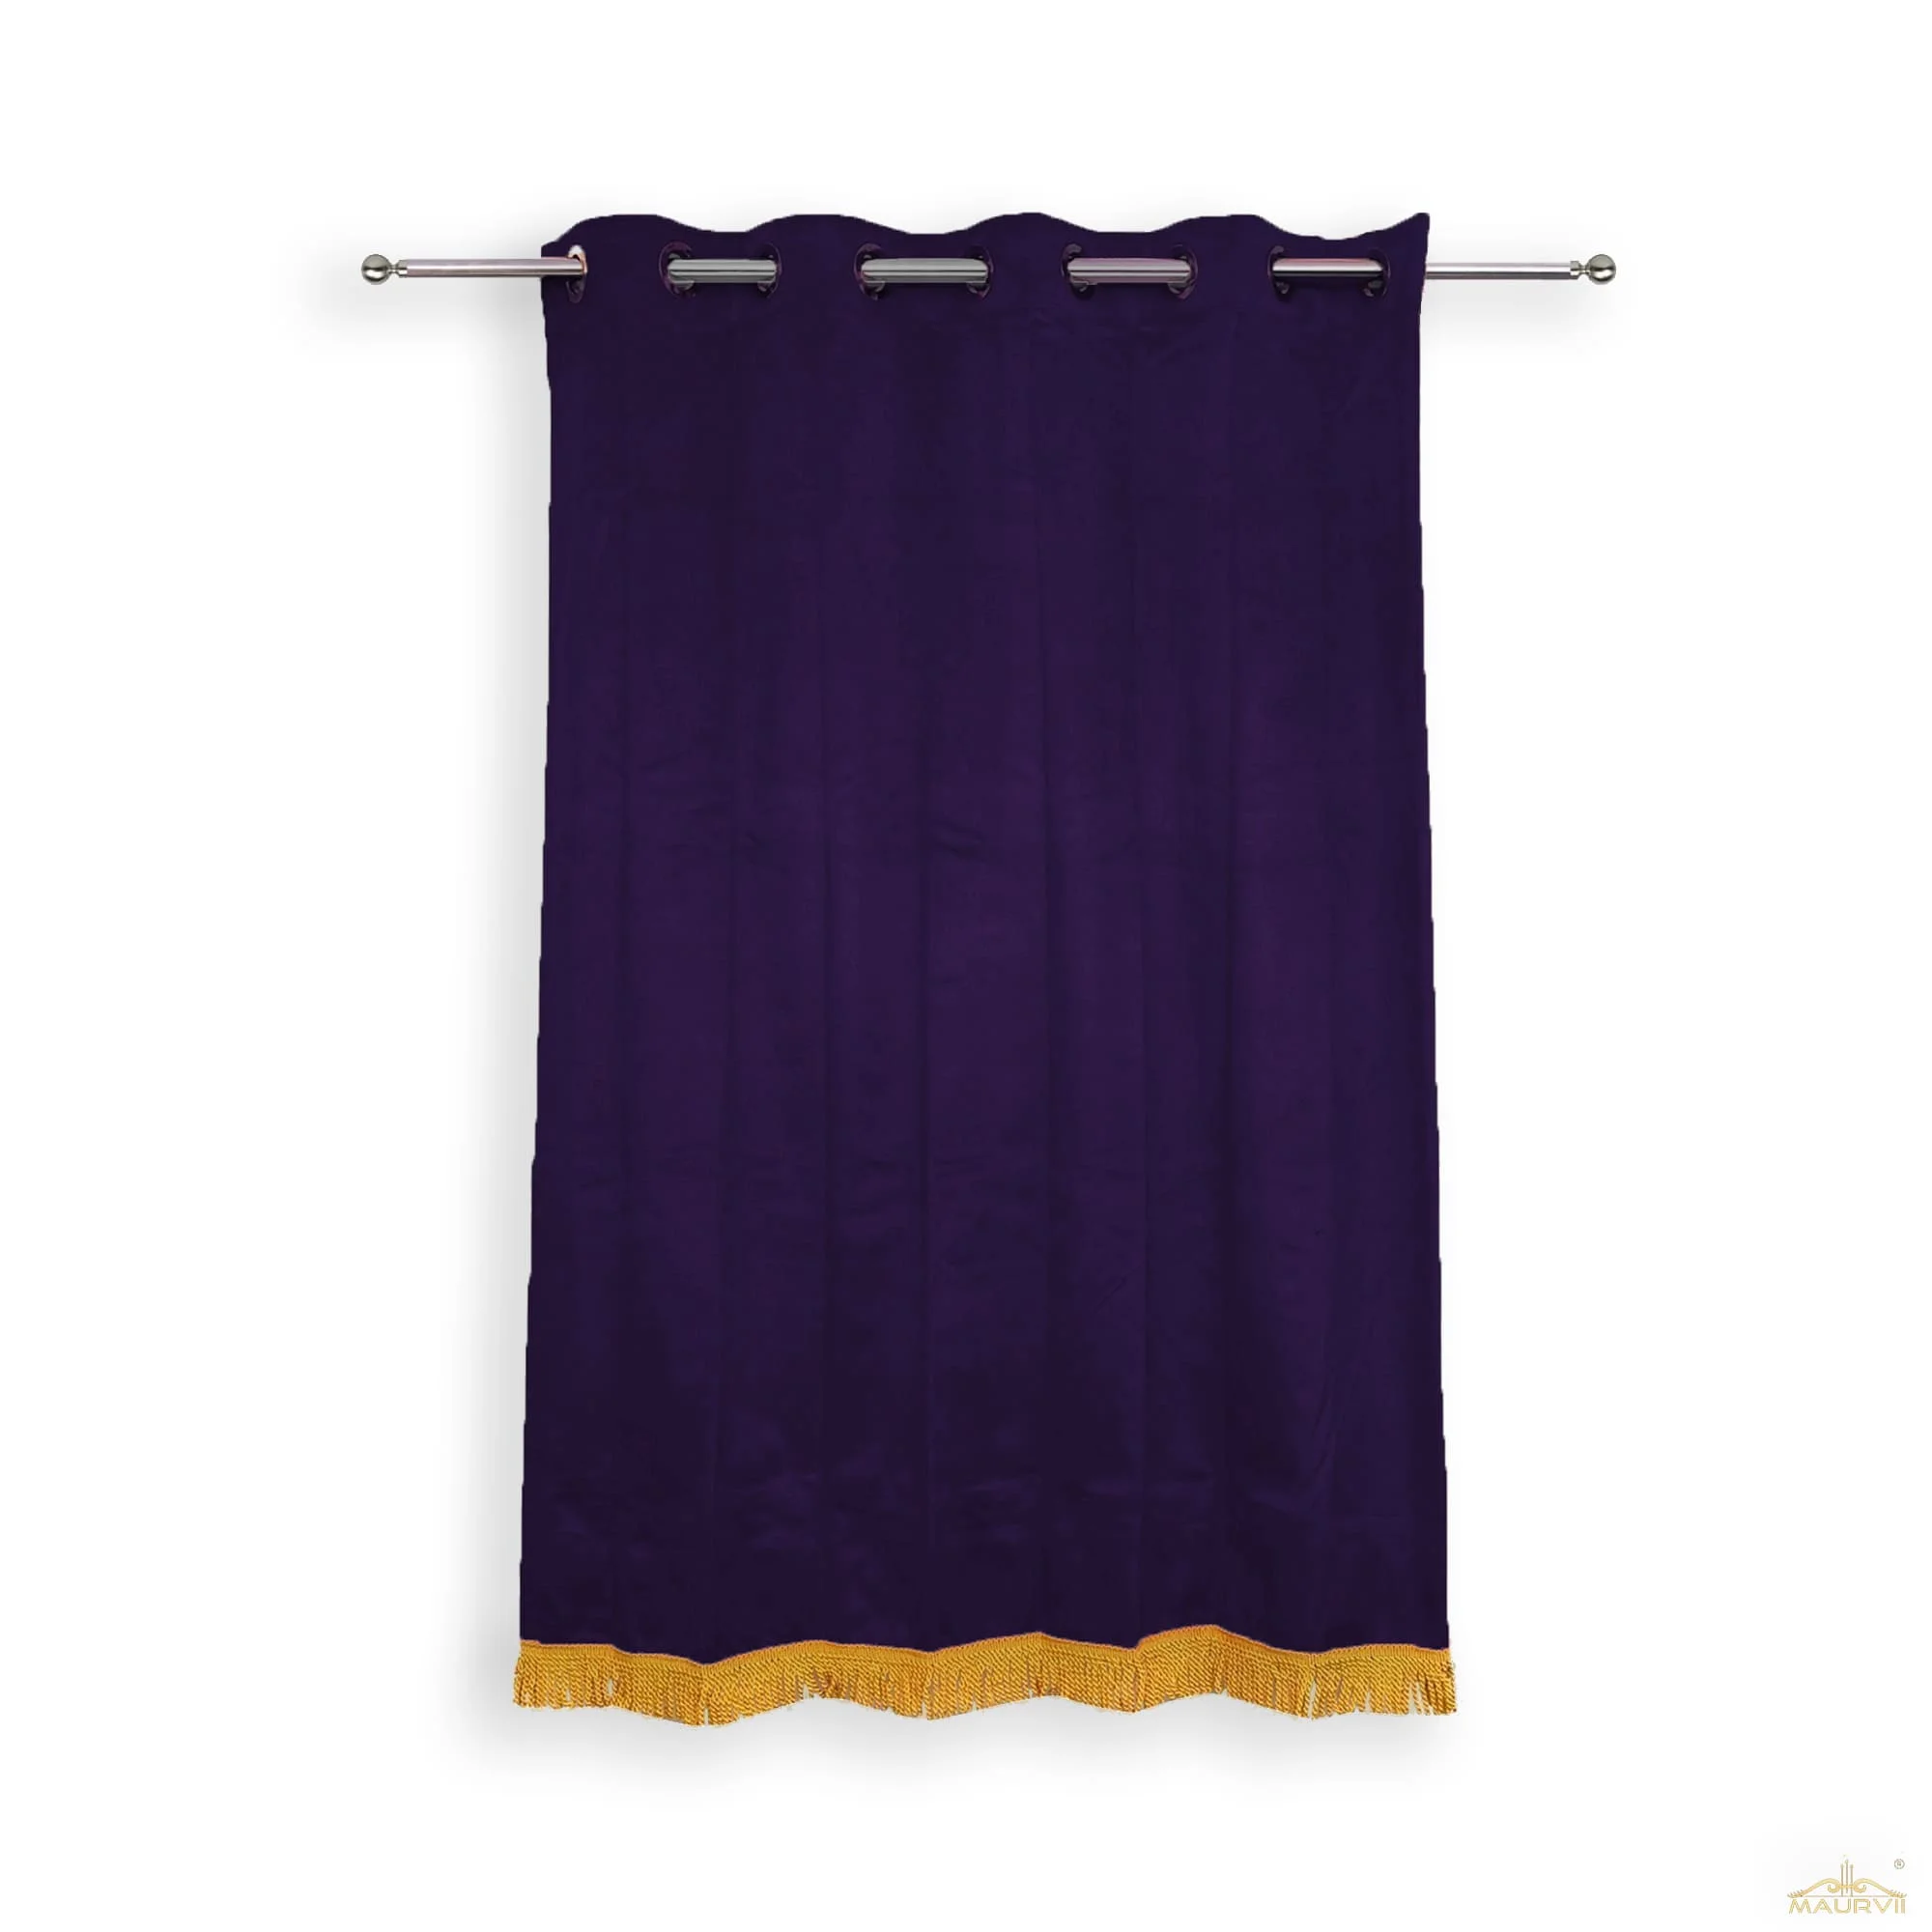 Plum velvet curtains with fringe